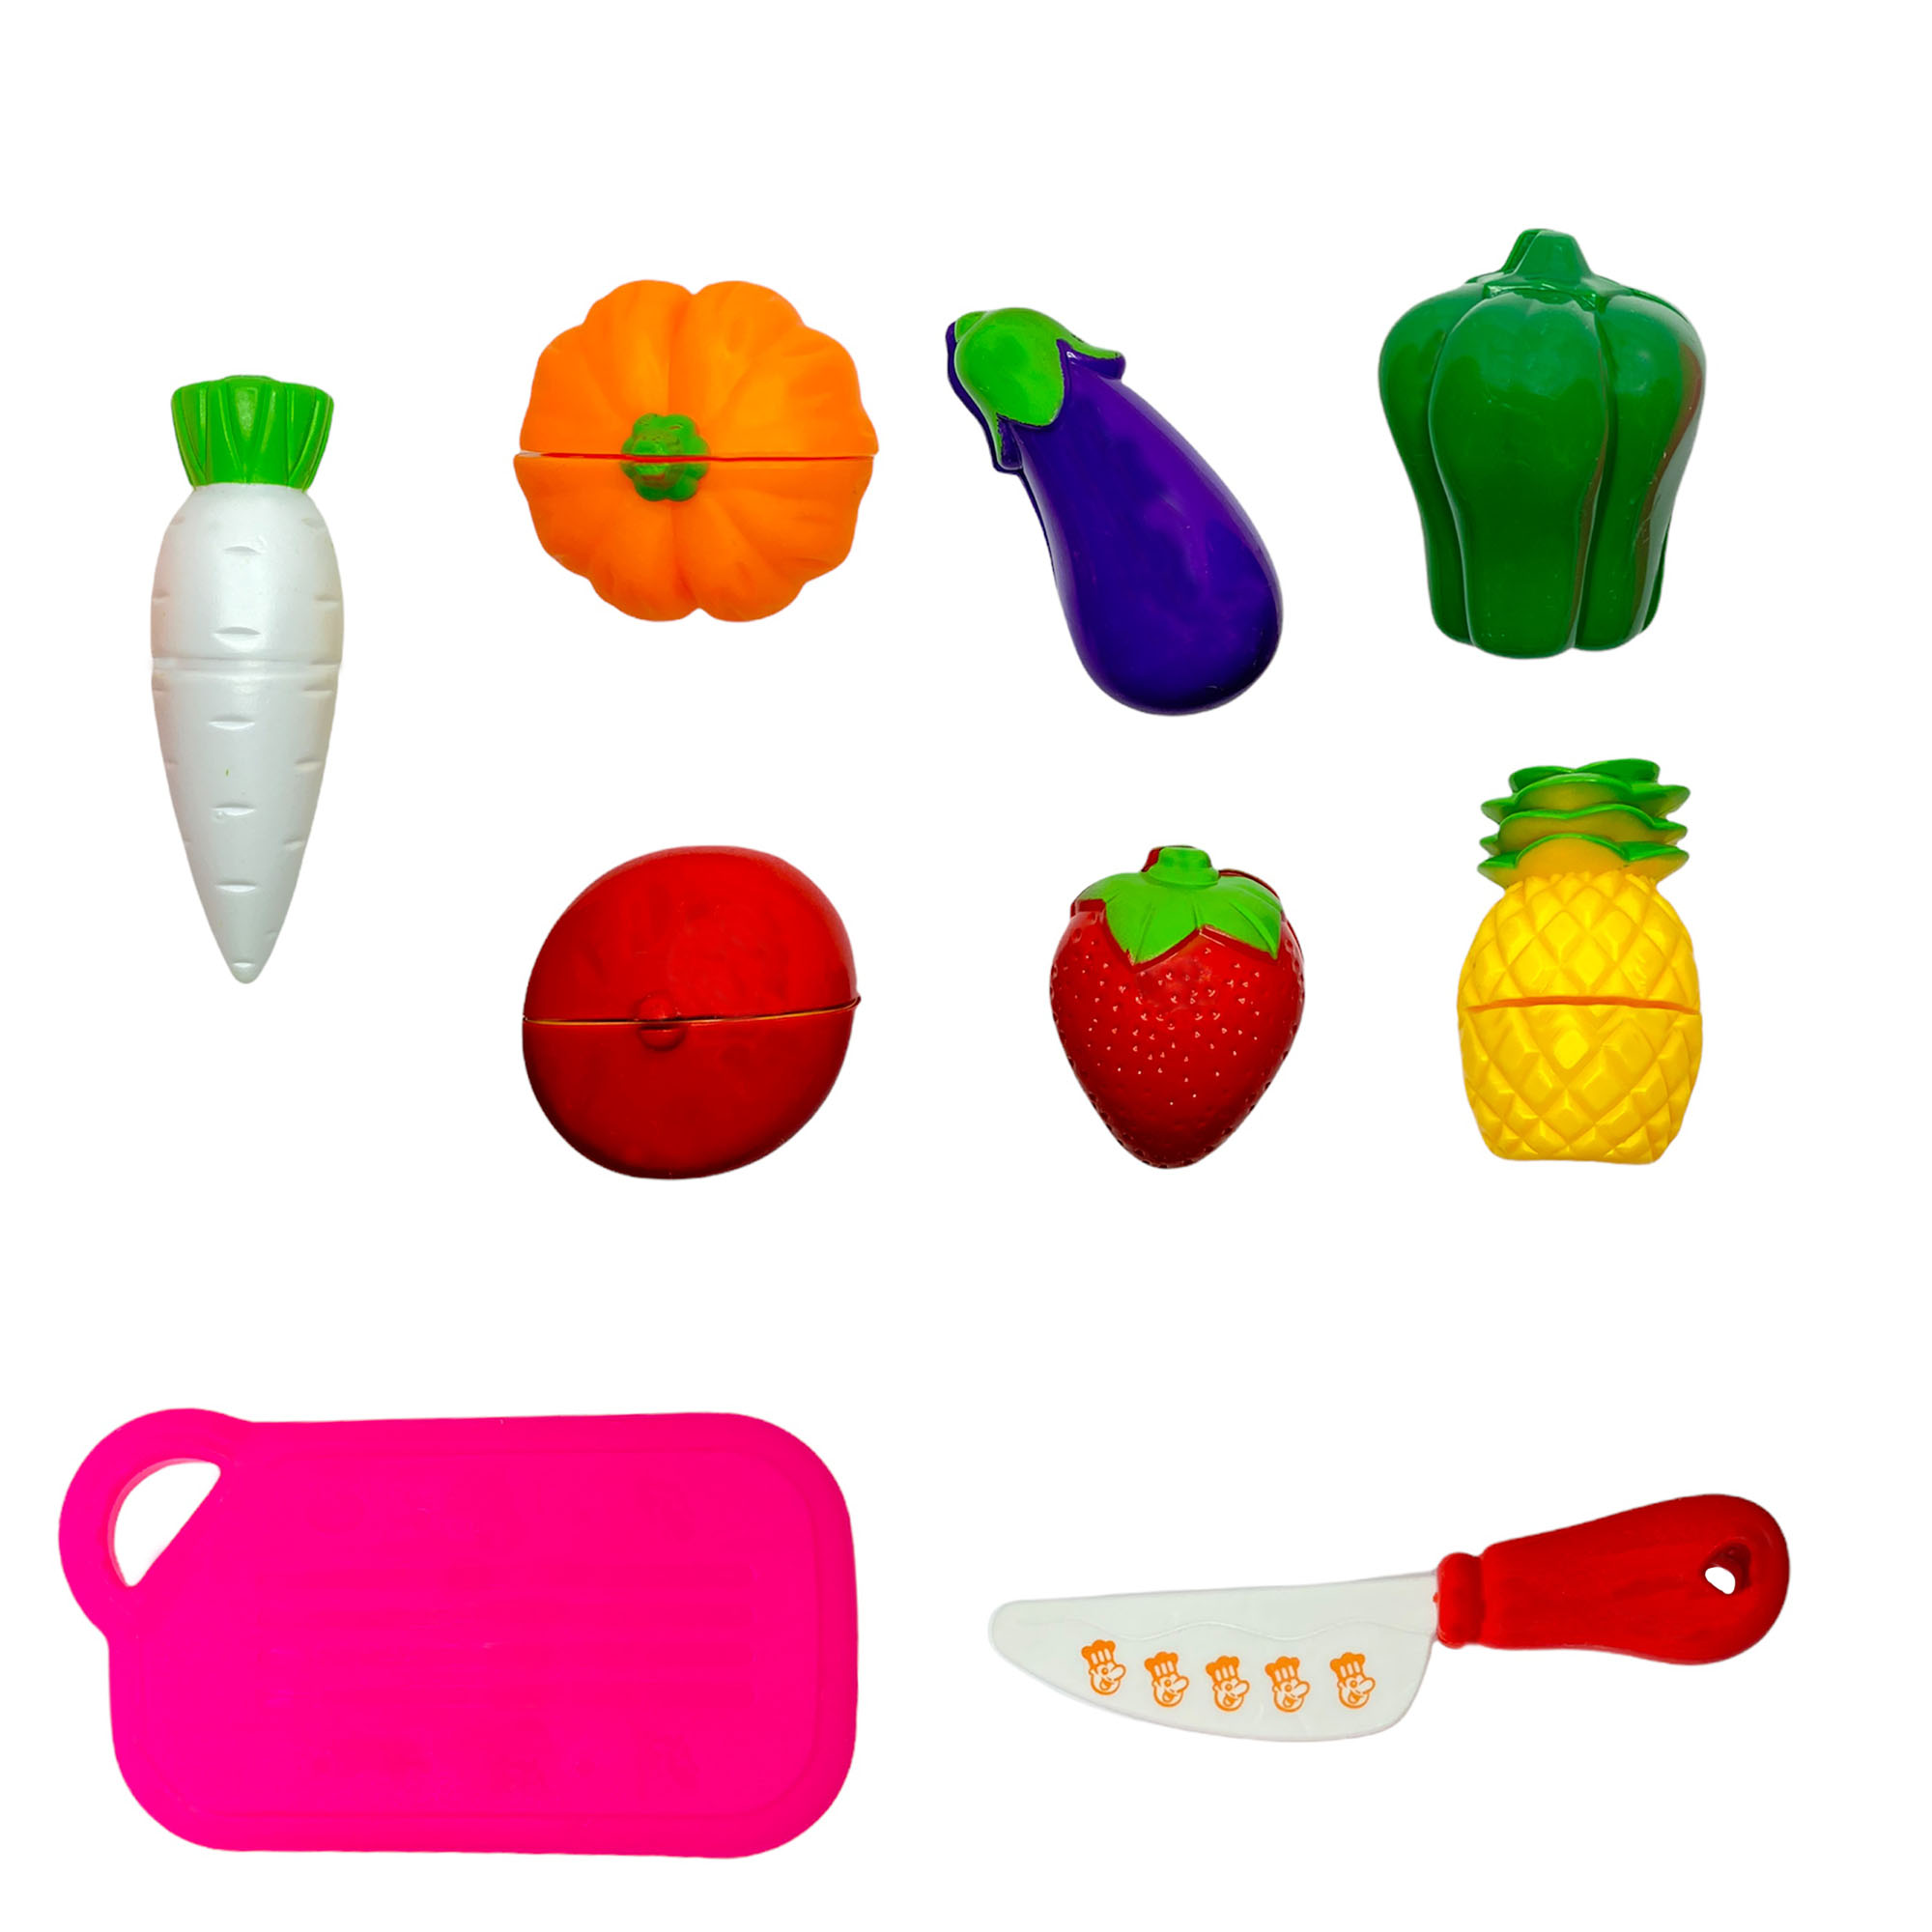 اسباب بازی مدل برش میوه و سبزیجات کد 2011 بسته 9 عددی